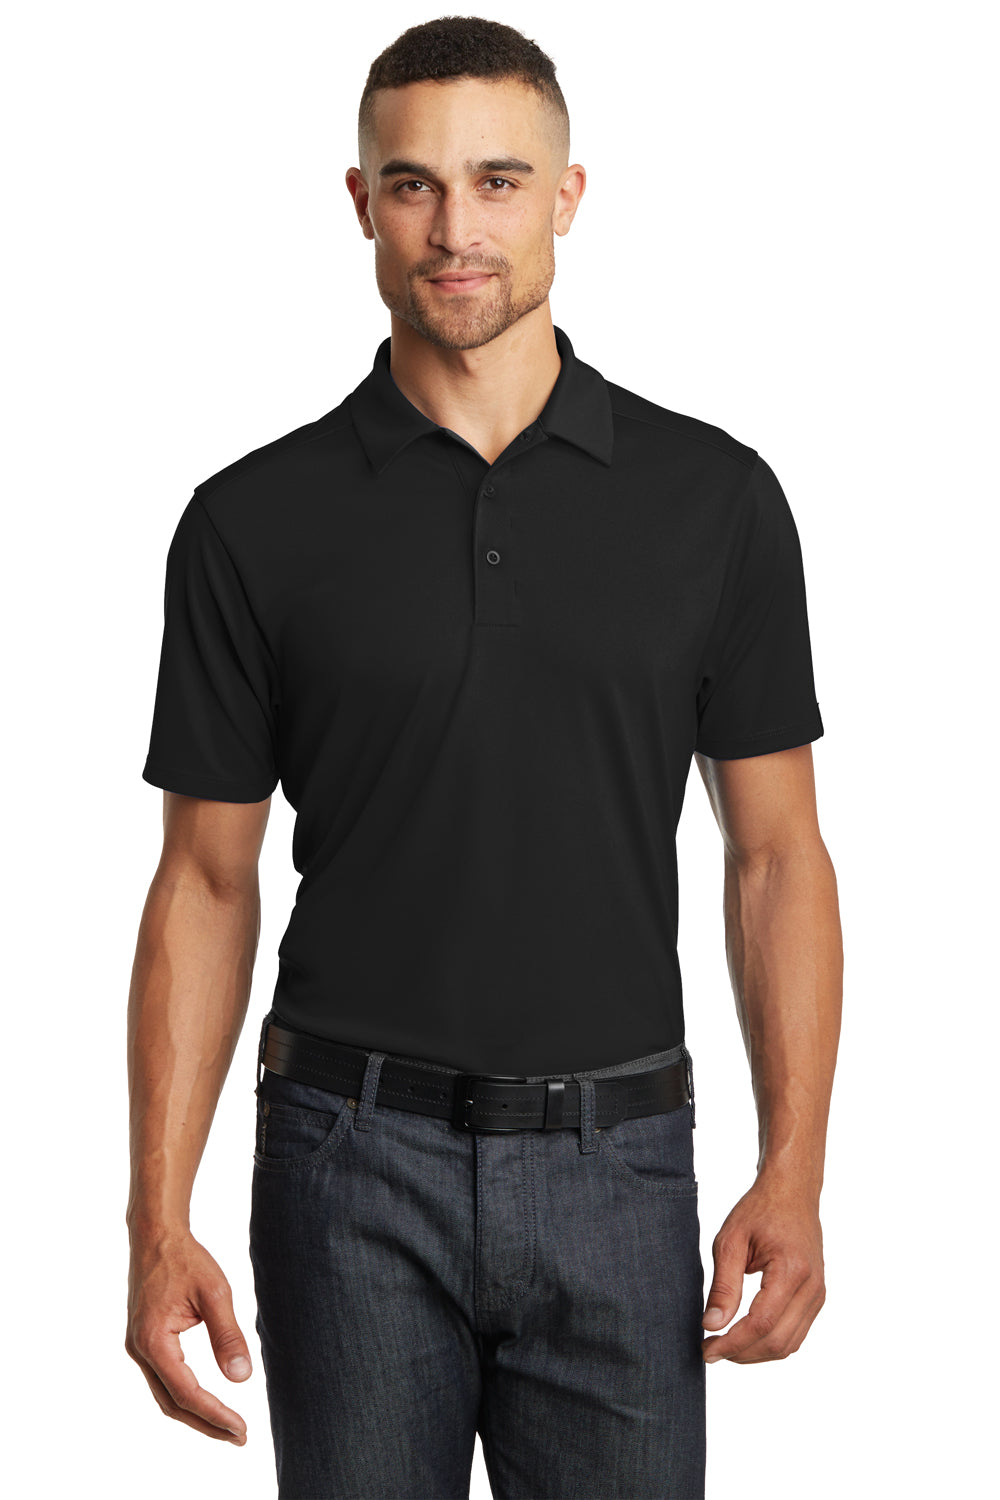 Ogio OG125 Mens Framework Moisture Wicking Short Sleeve Polo Shirt Black Front